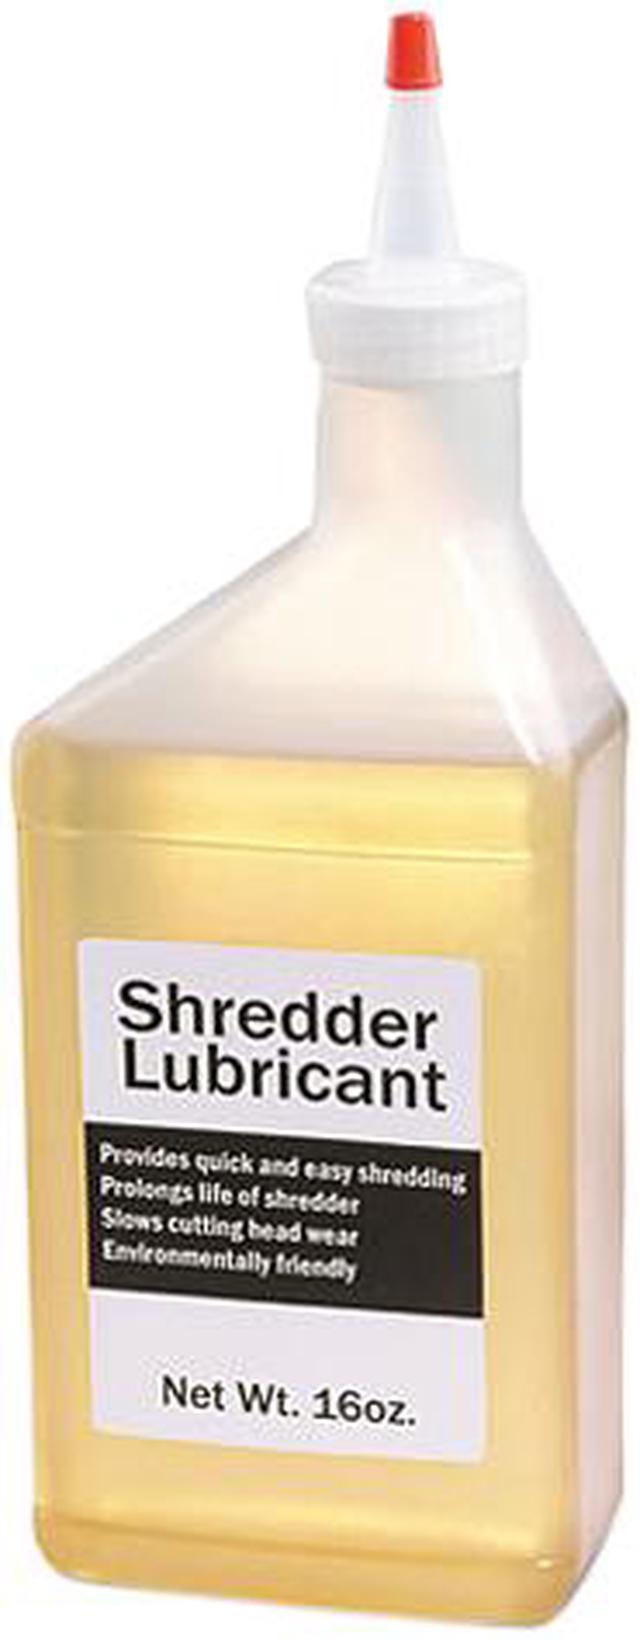 HSM 314 Shredder Oil, 16 oz. - 1 Bottle 